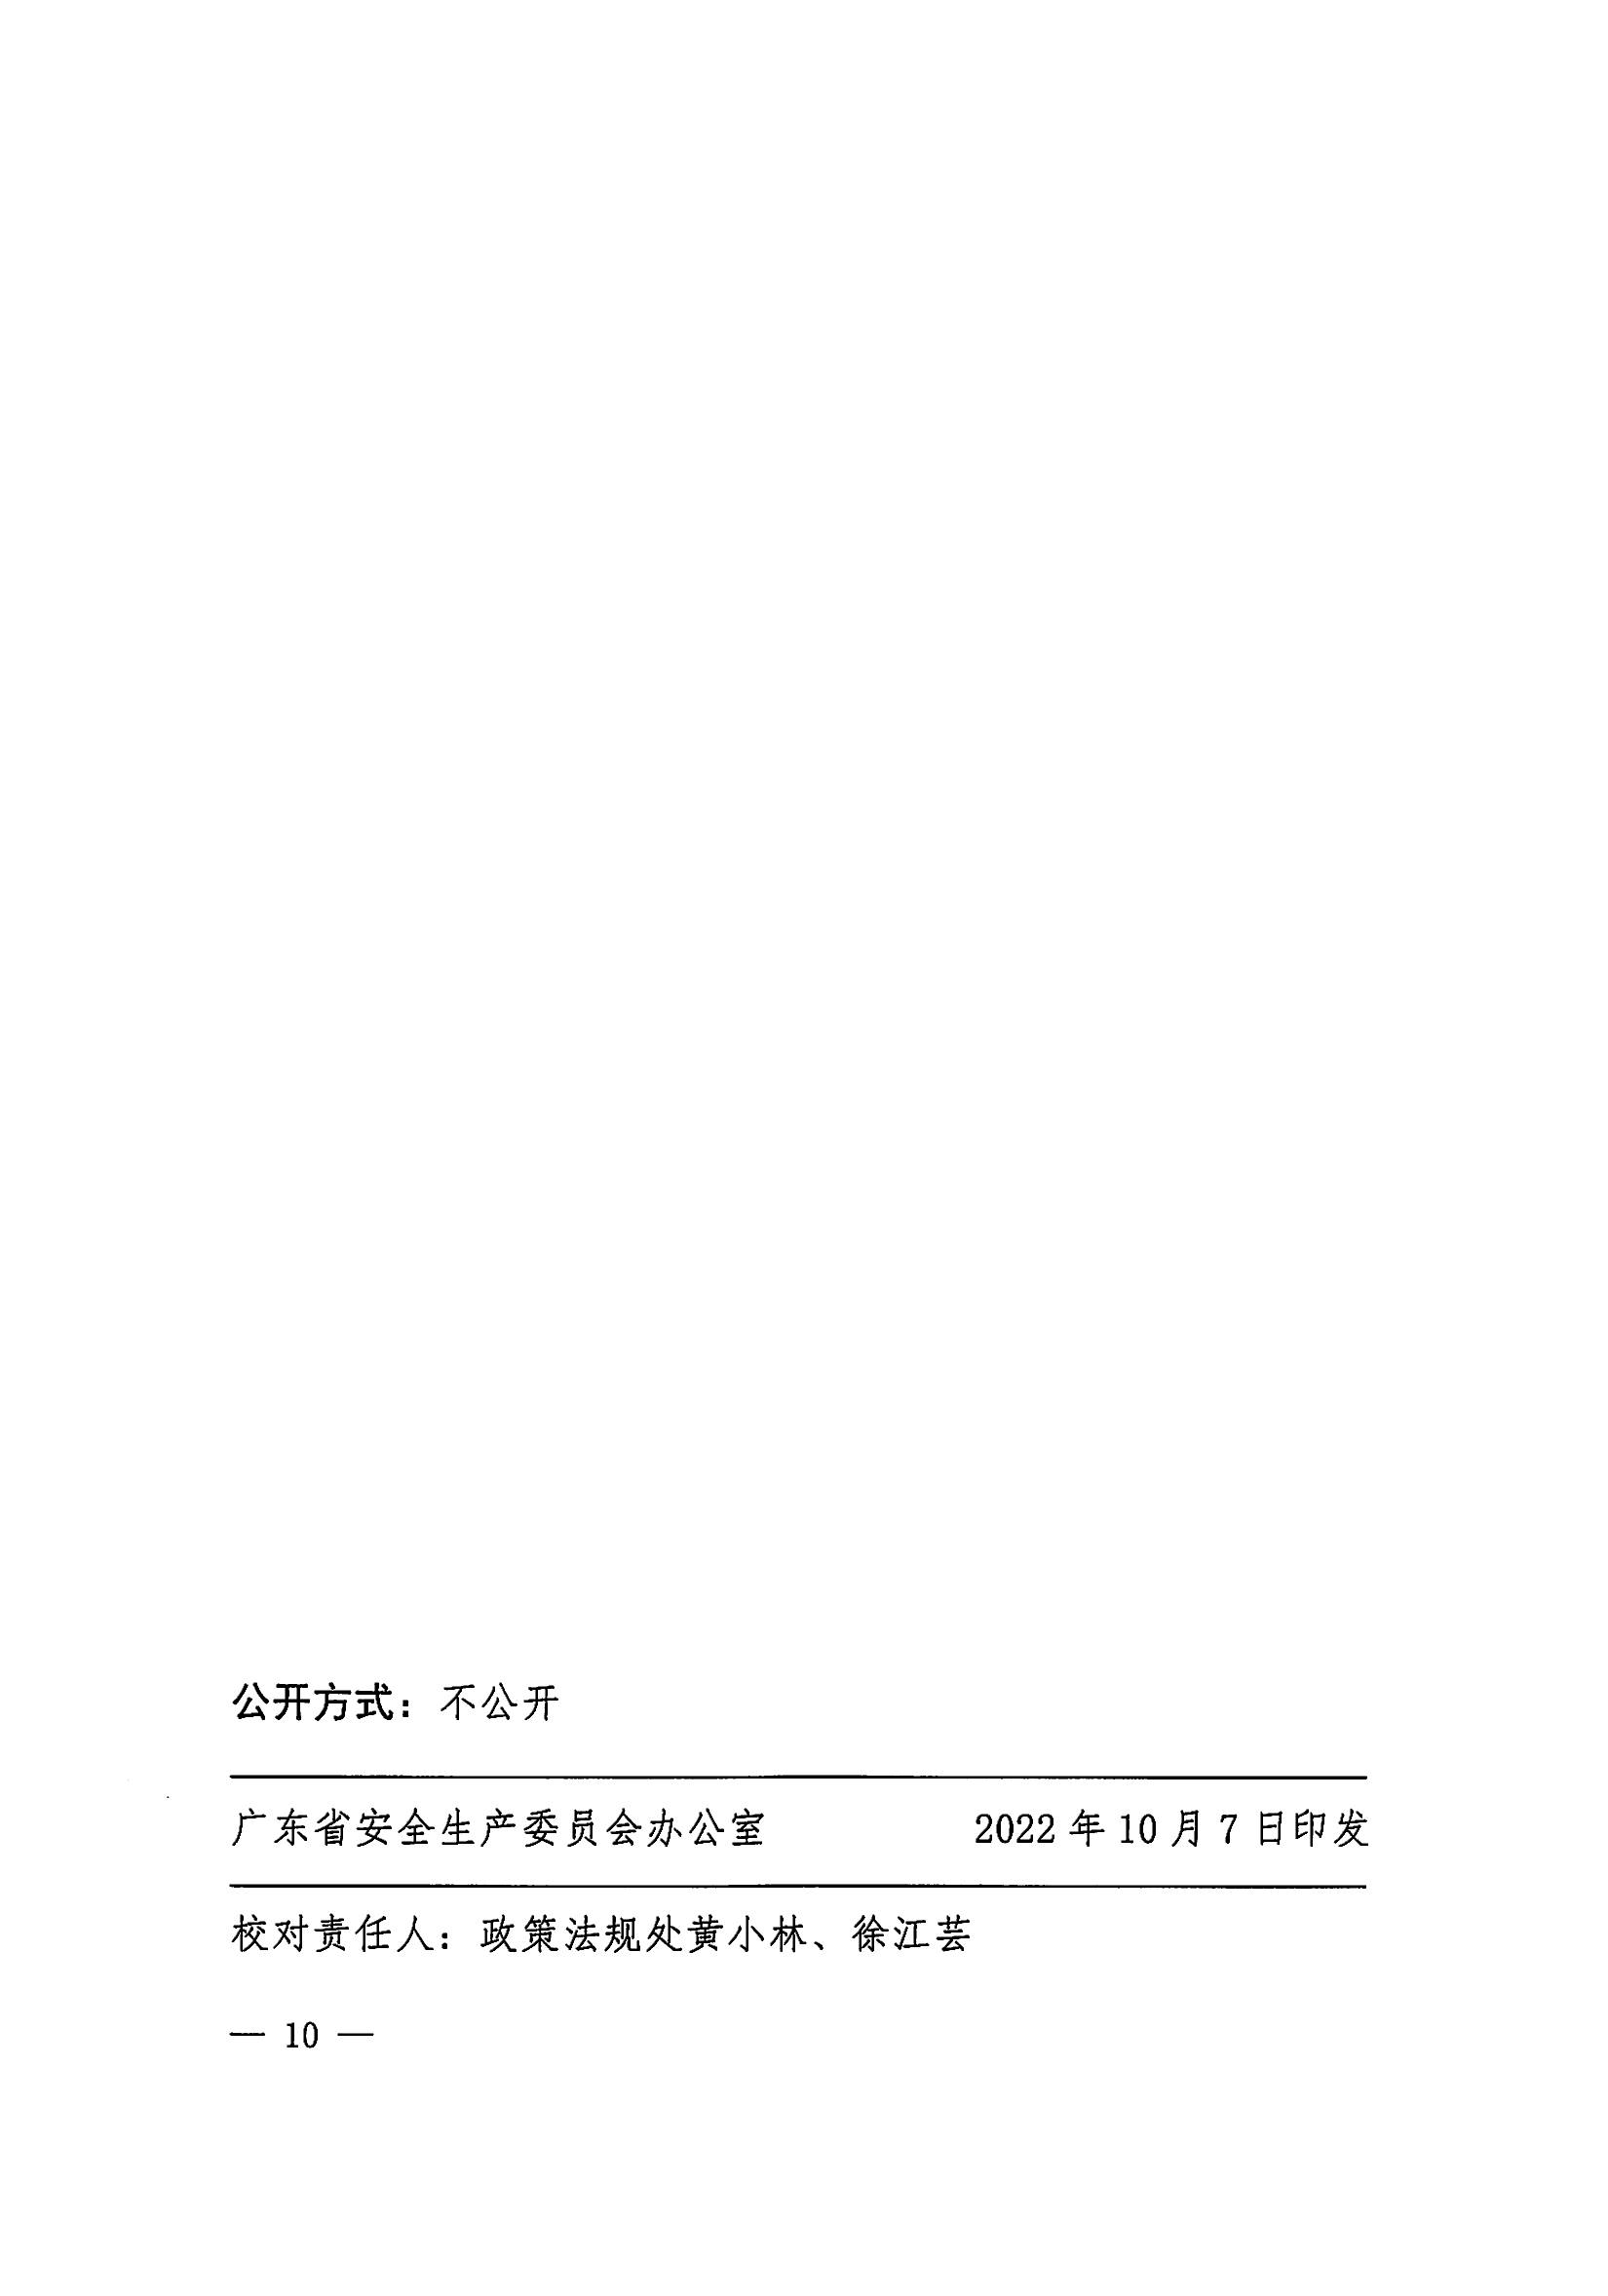 惠州市安全生产委员会办公室转发关于进一步组织开展好广东应急普法“线上马拉松”活动的通知_11.png